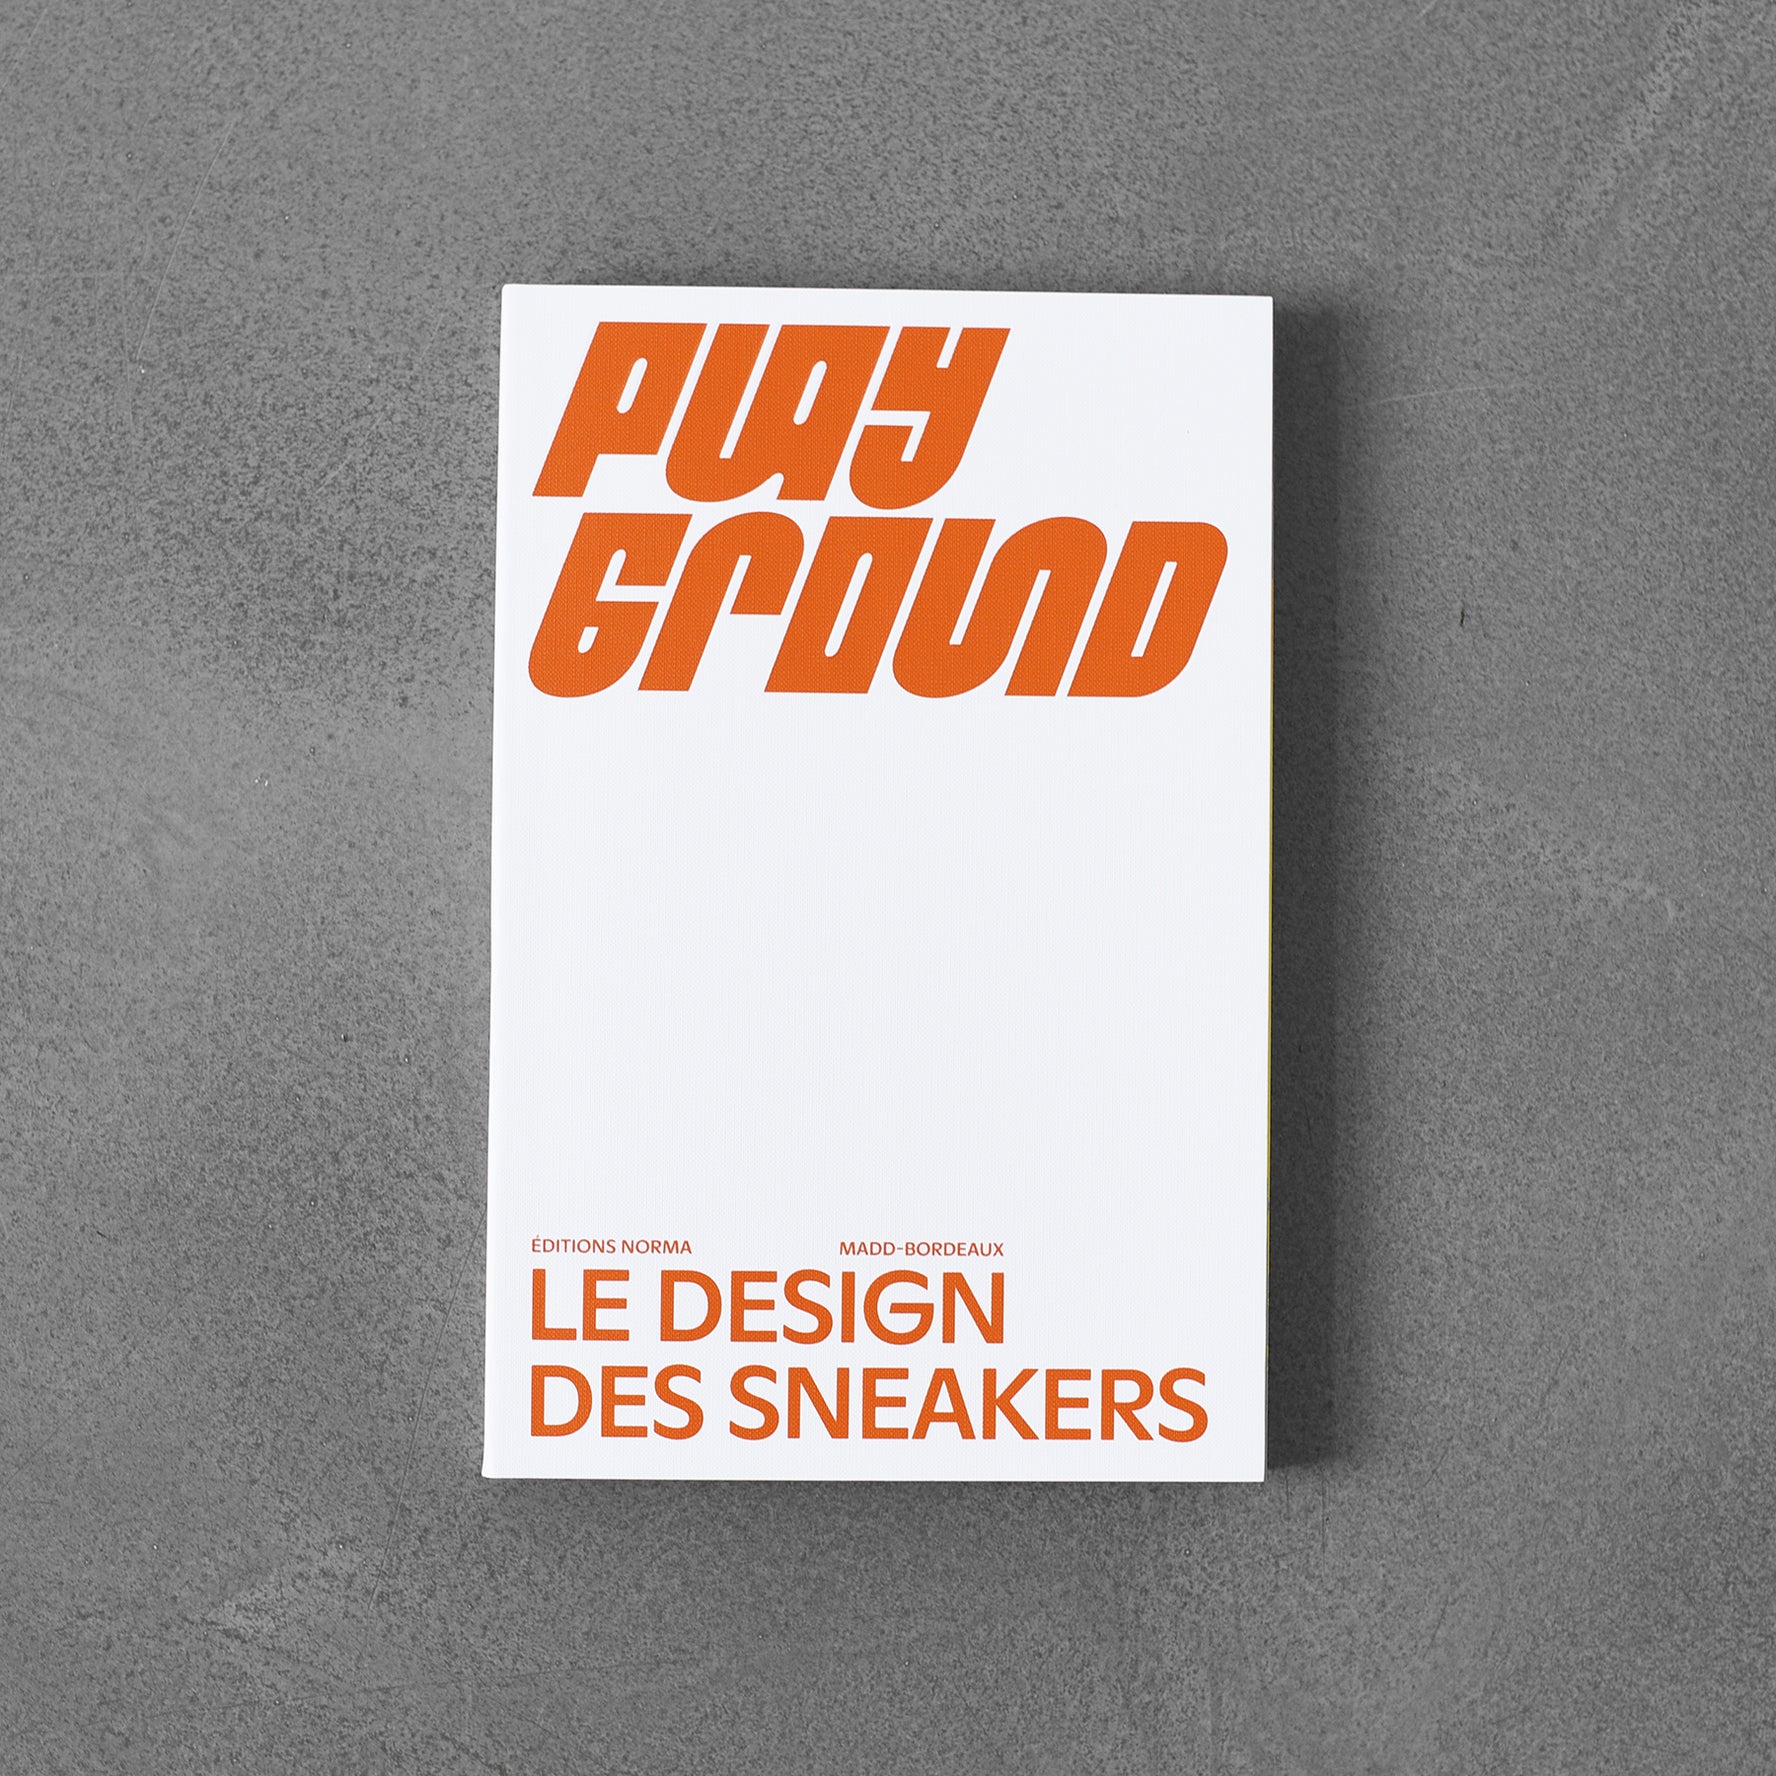 Plac zabaw. : Le design des sneakers angielski, wydanie francuskie